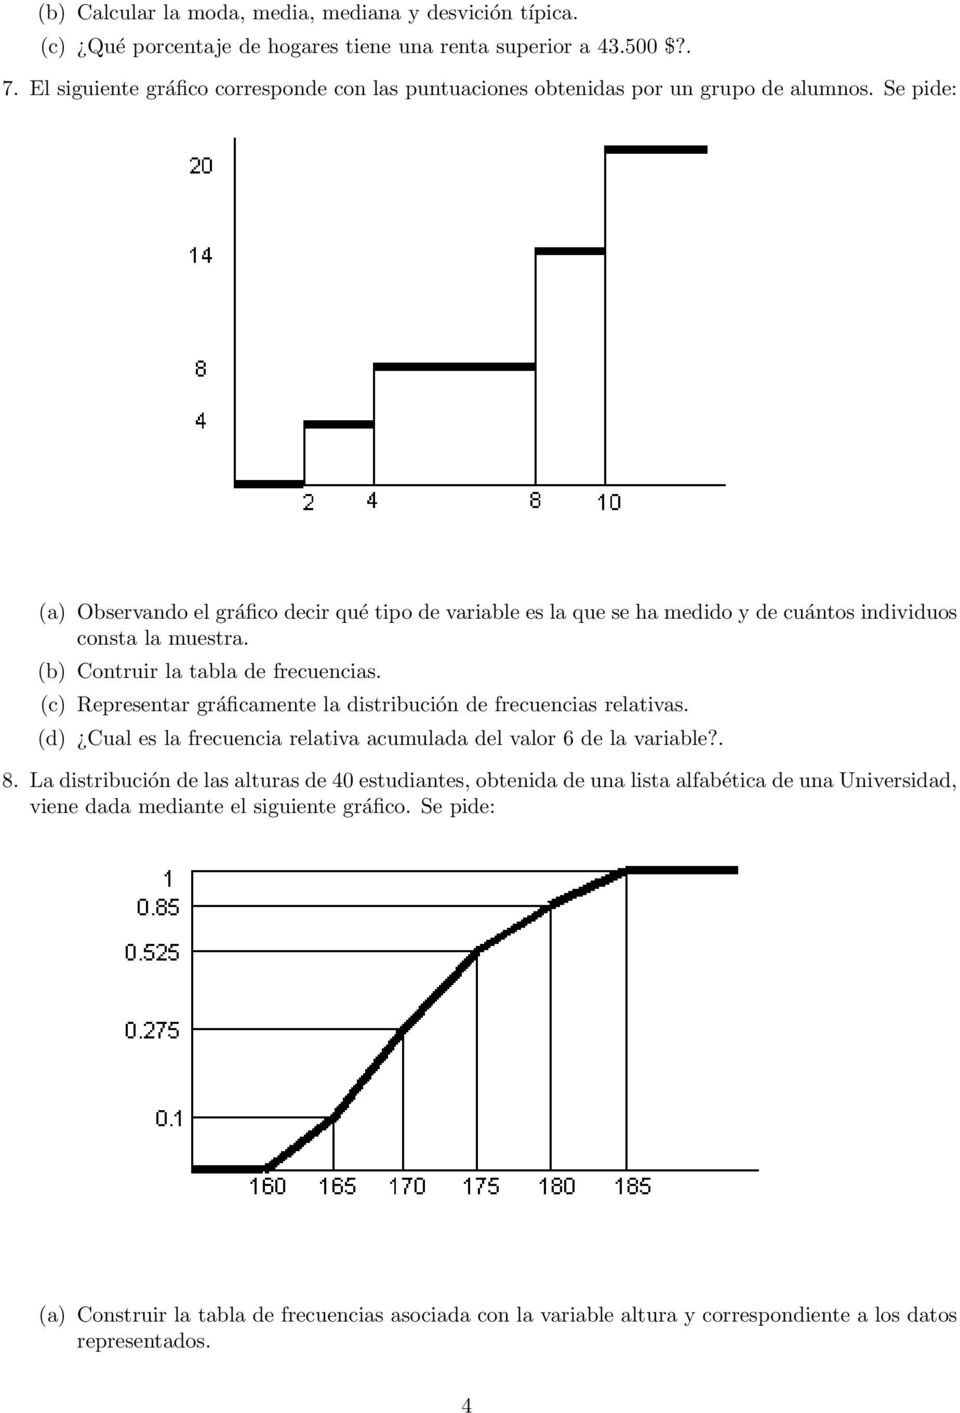 (a) Observando el gráfico decir qué tipo de variable es la que se ha medido y de cuántos individuos consta la muestra. (b) Contruir la tabla de frecuencias.